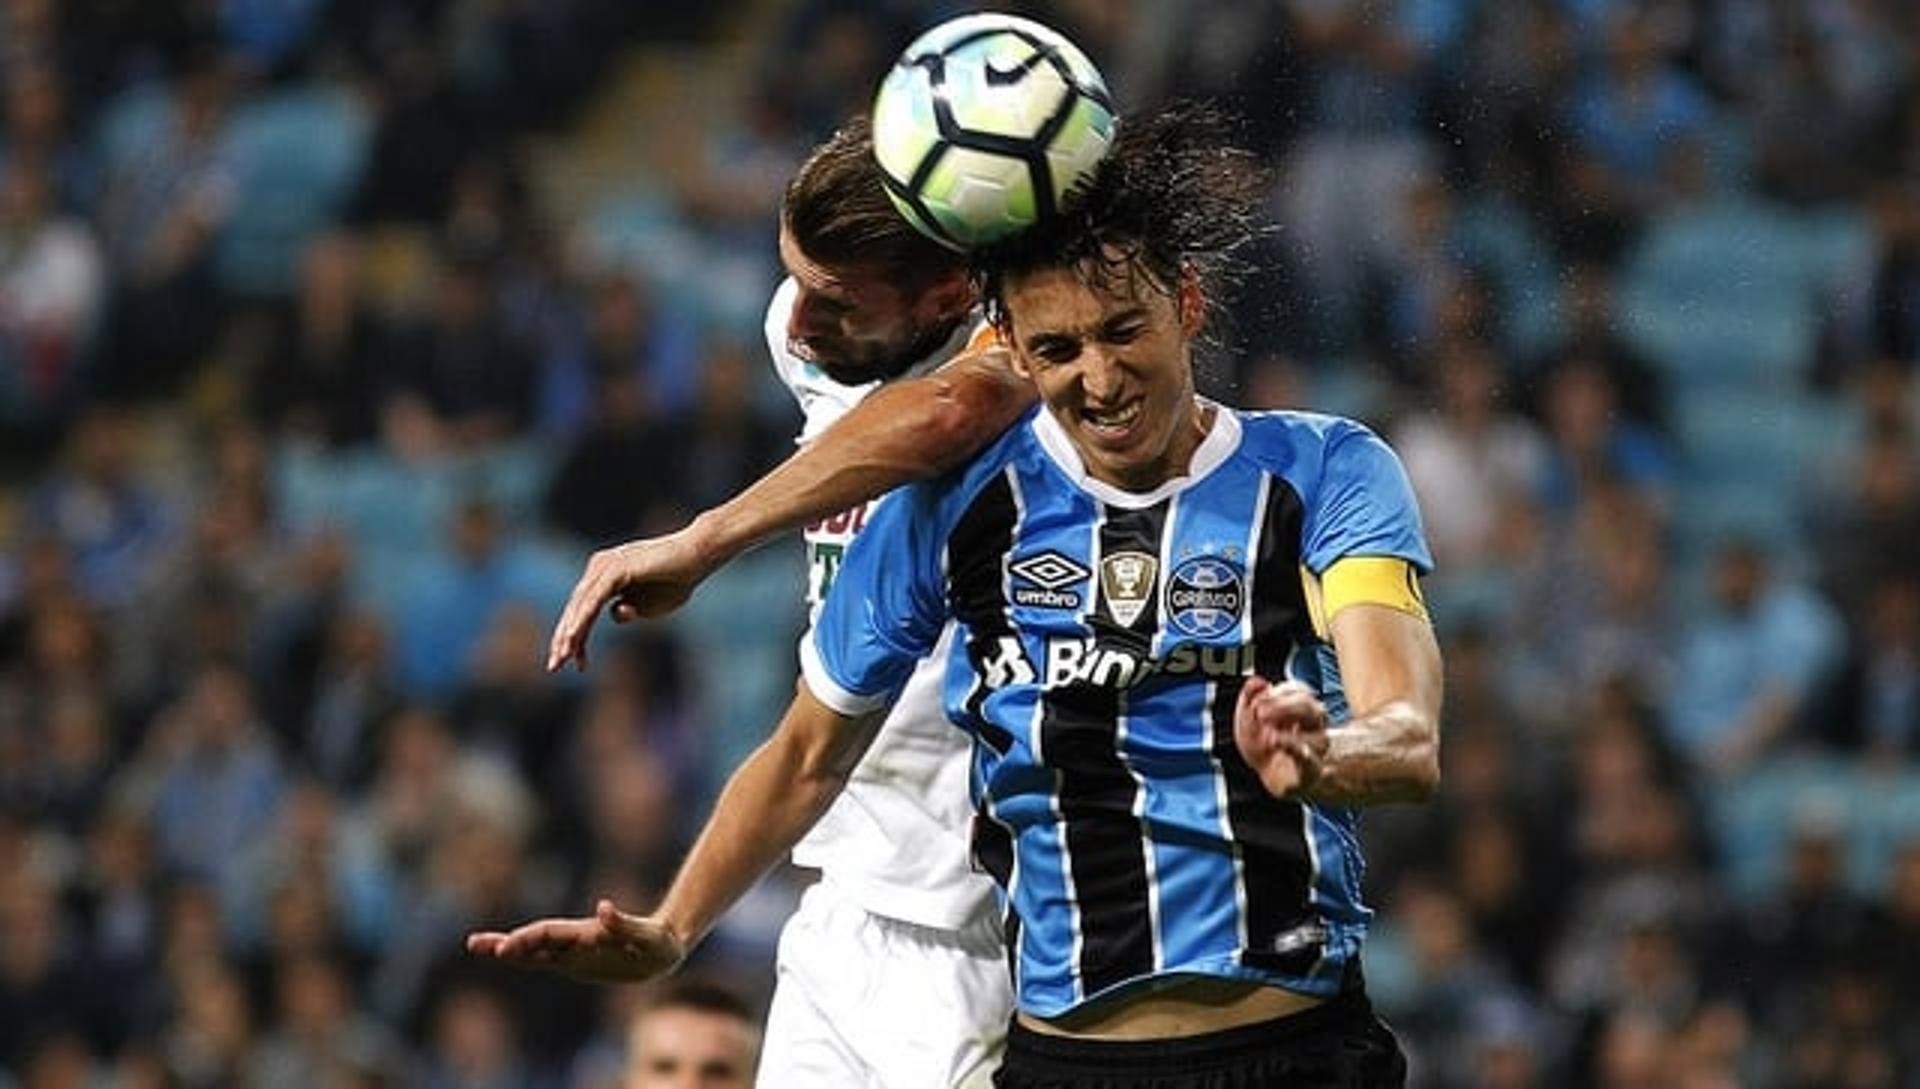 Henrique disputa bola no alto com Geromel na Arena do Grêmio